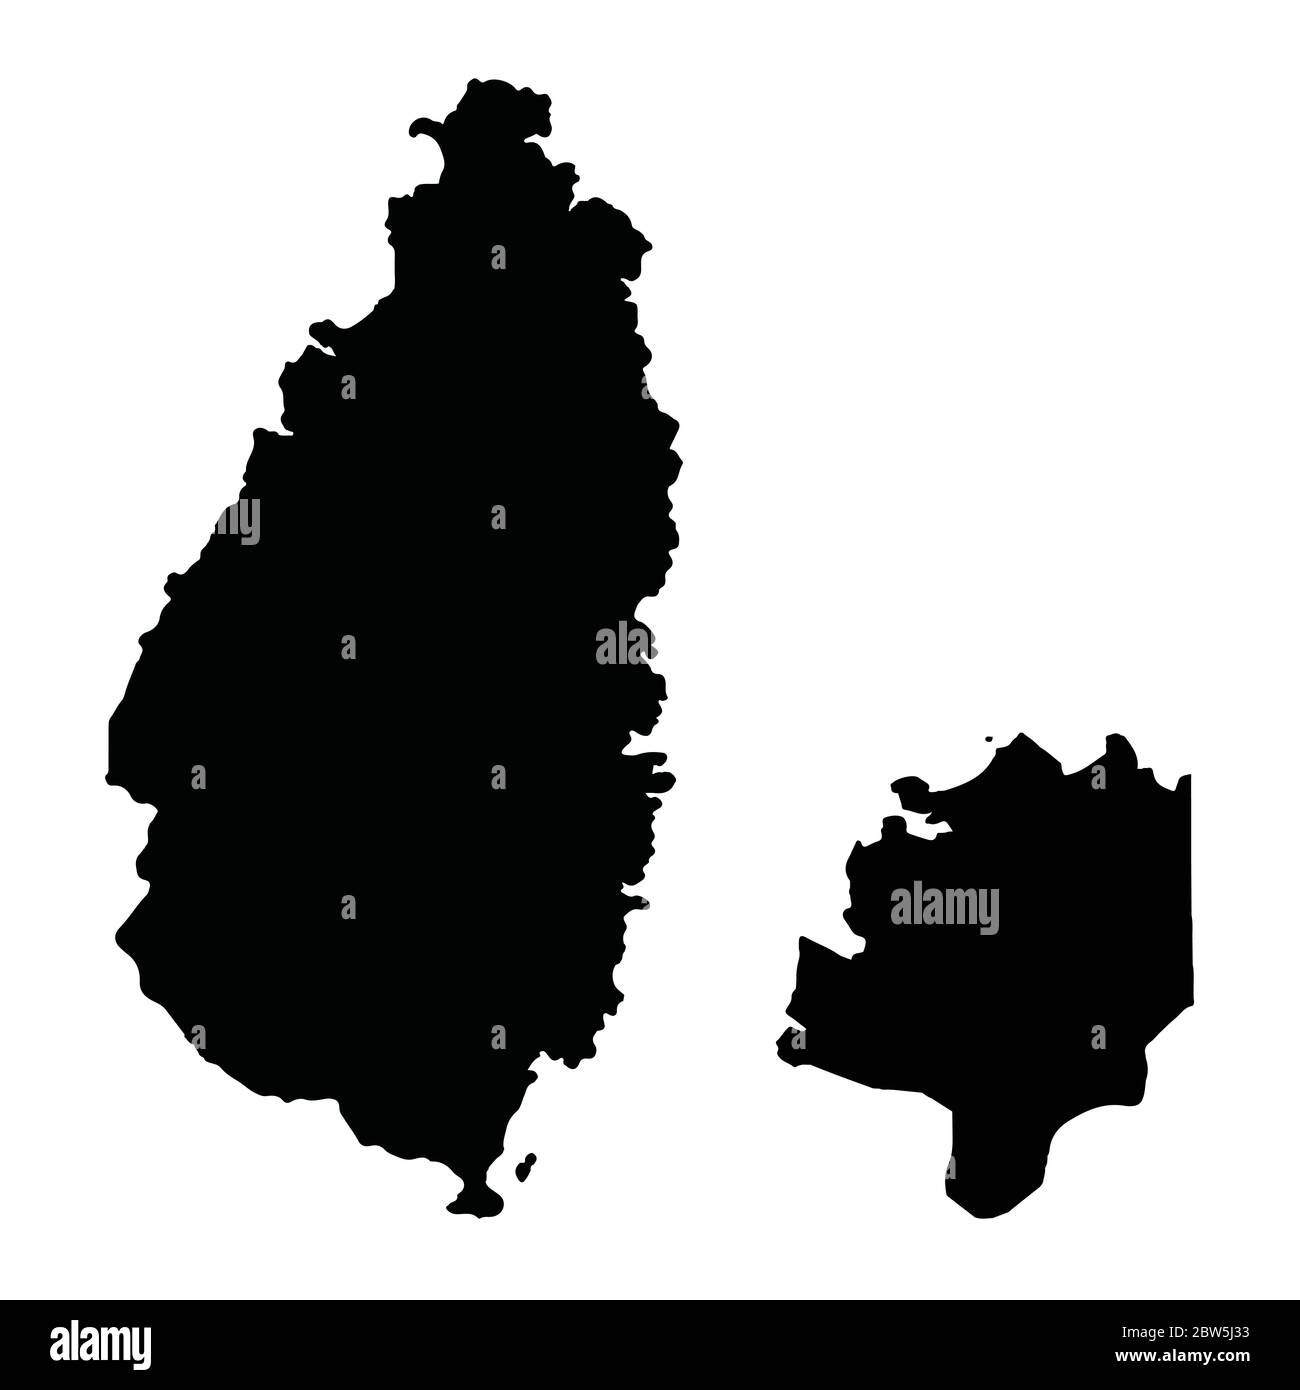 Mappa vettoriale Santa Lucia e Castries. Illustrazione vettoriale isolata. Nero su sfondo bianco. Illustrazione EPS 10. Illustrazione Vettoriale